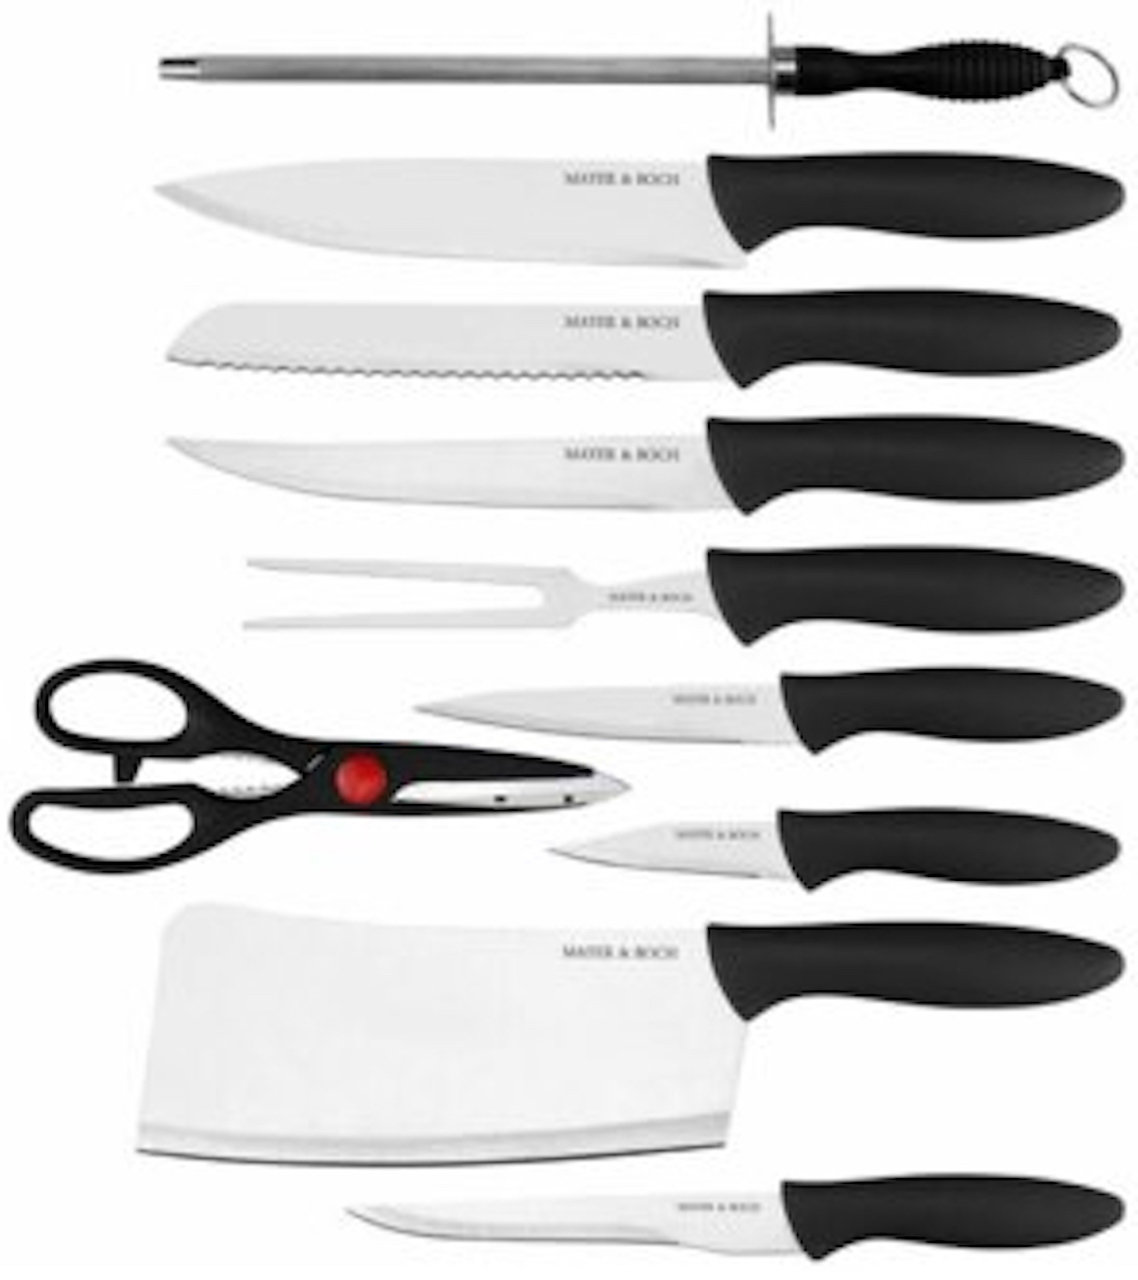 https://assets.wfcdn.com/im/47516164/compr-r85/2276/227662810/mayer-boch-11-piece-stainless-steel-assorted-knife-set.jpg